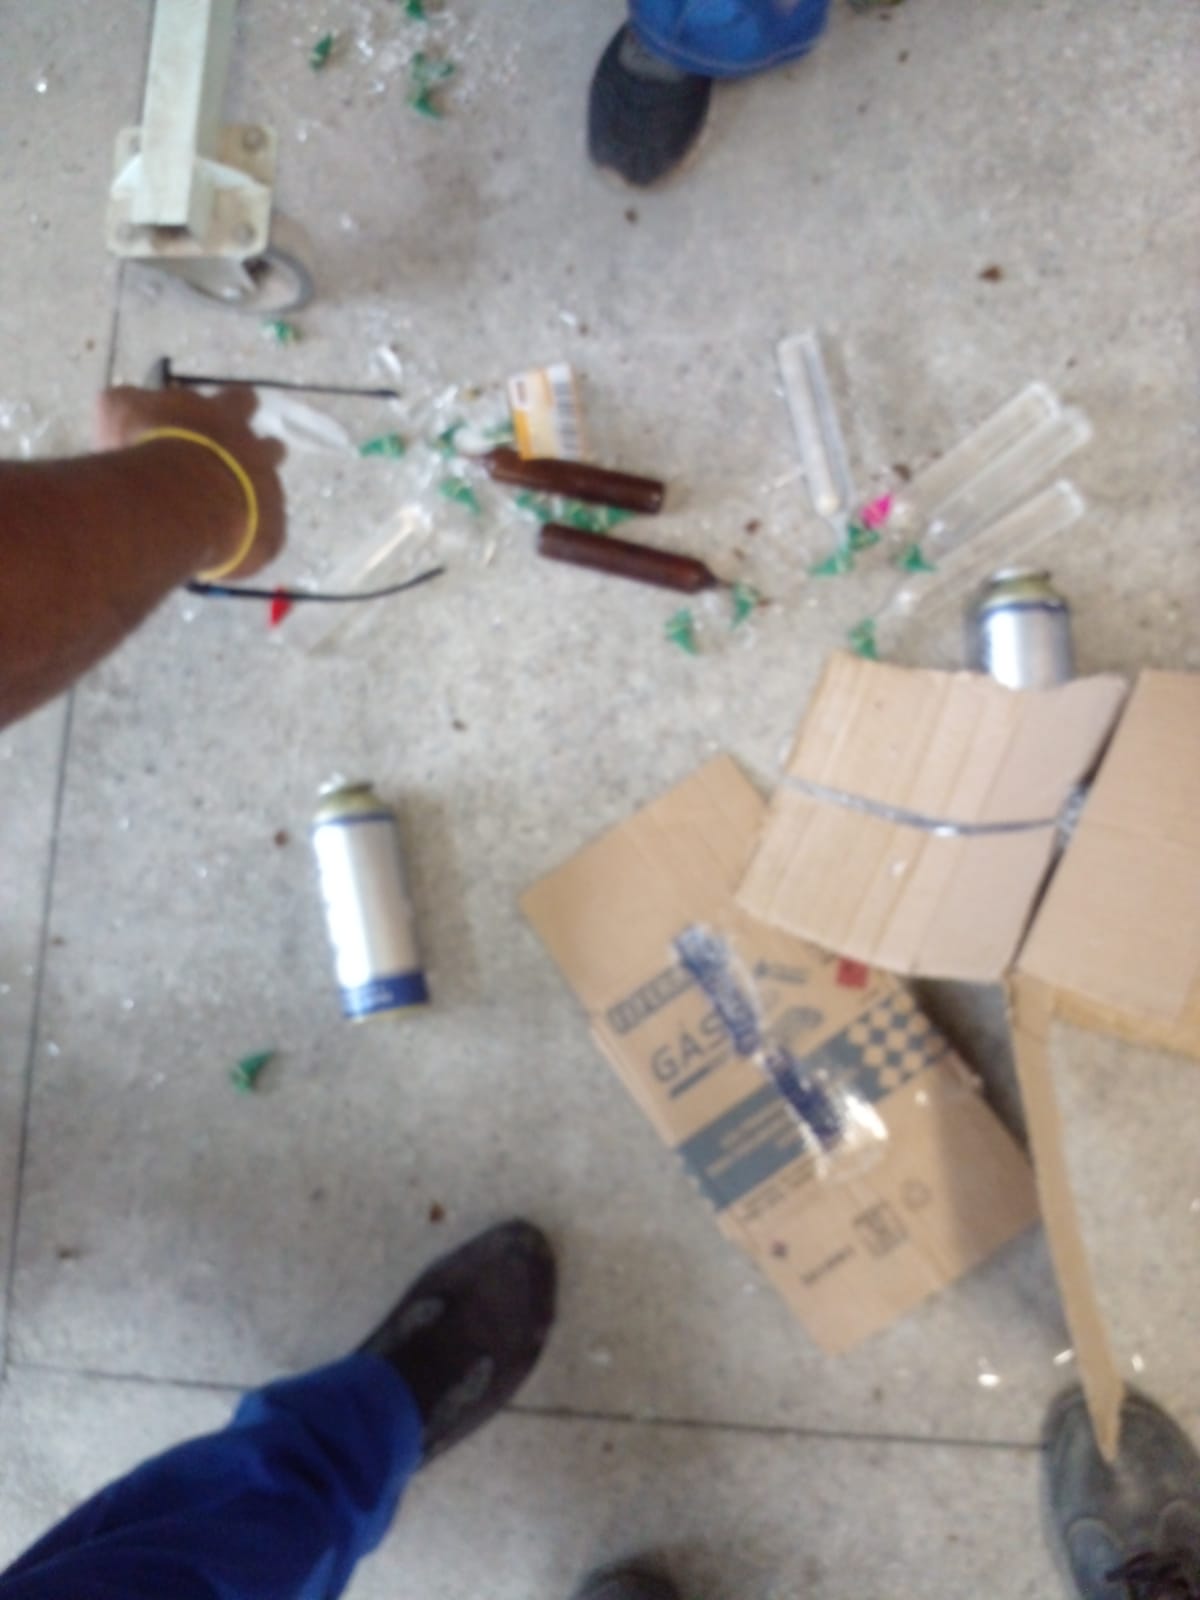 Caixa com produtos químicos explodem em centro de distribuição dos Correios, em Ribeirão das Neves - Foto: Divulgação/CBMMG